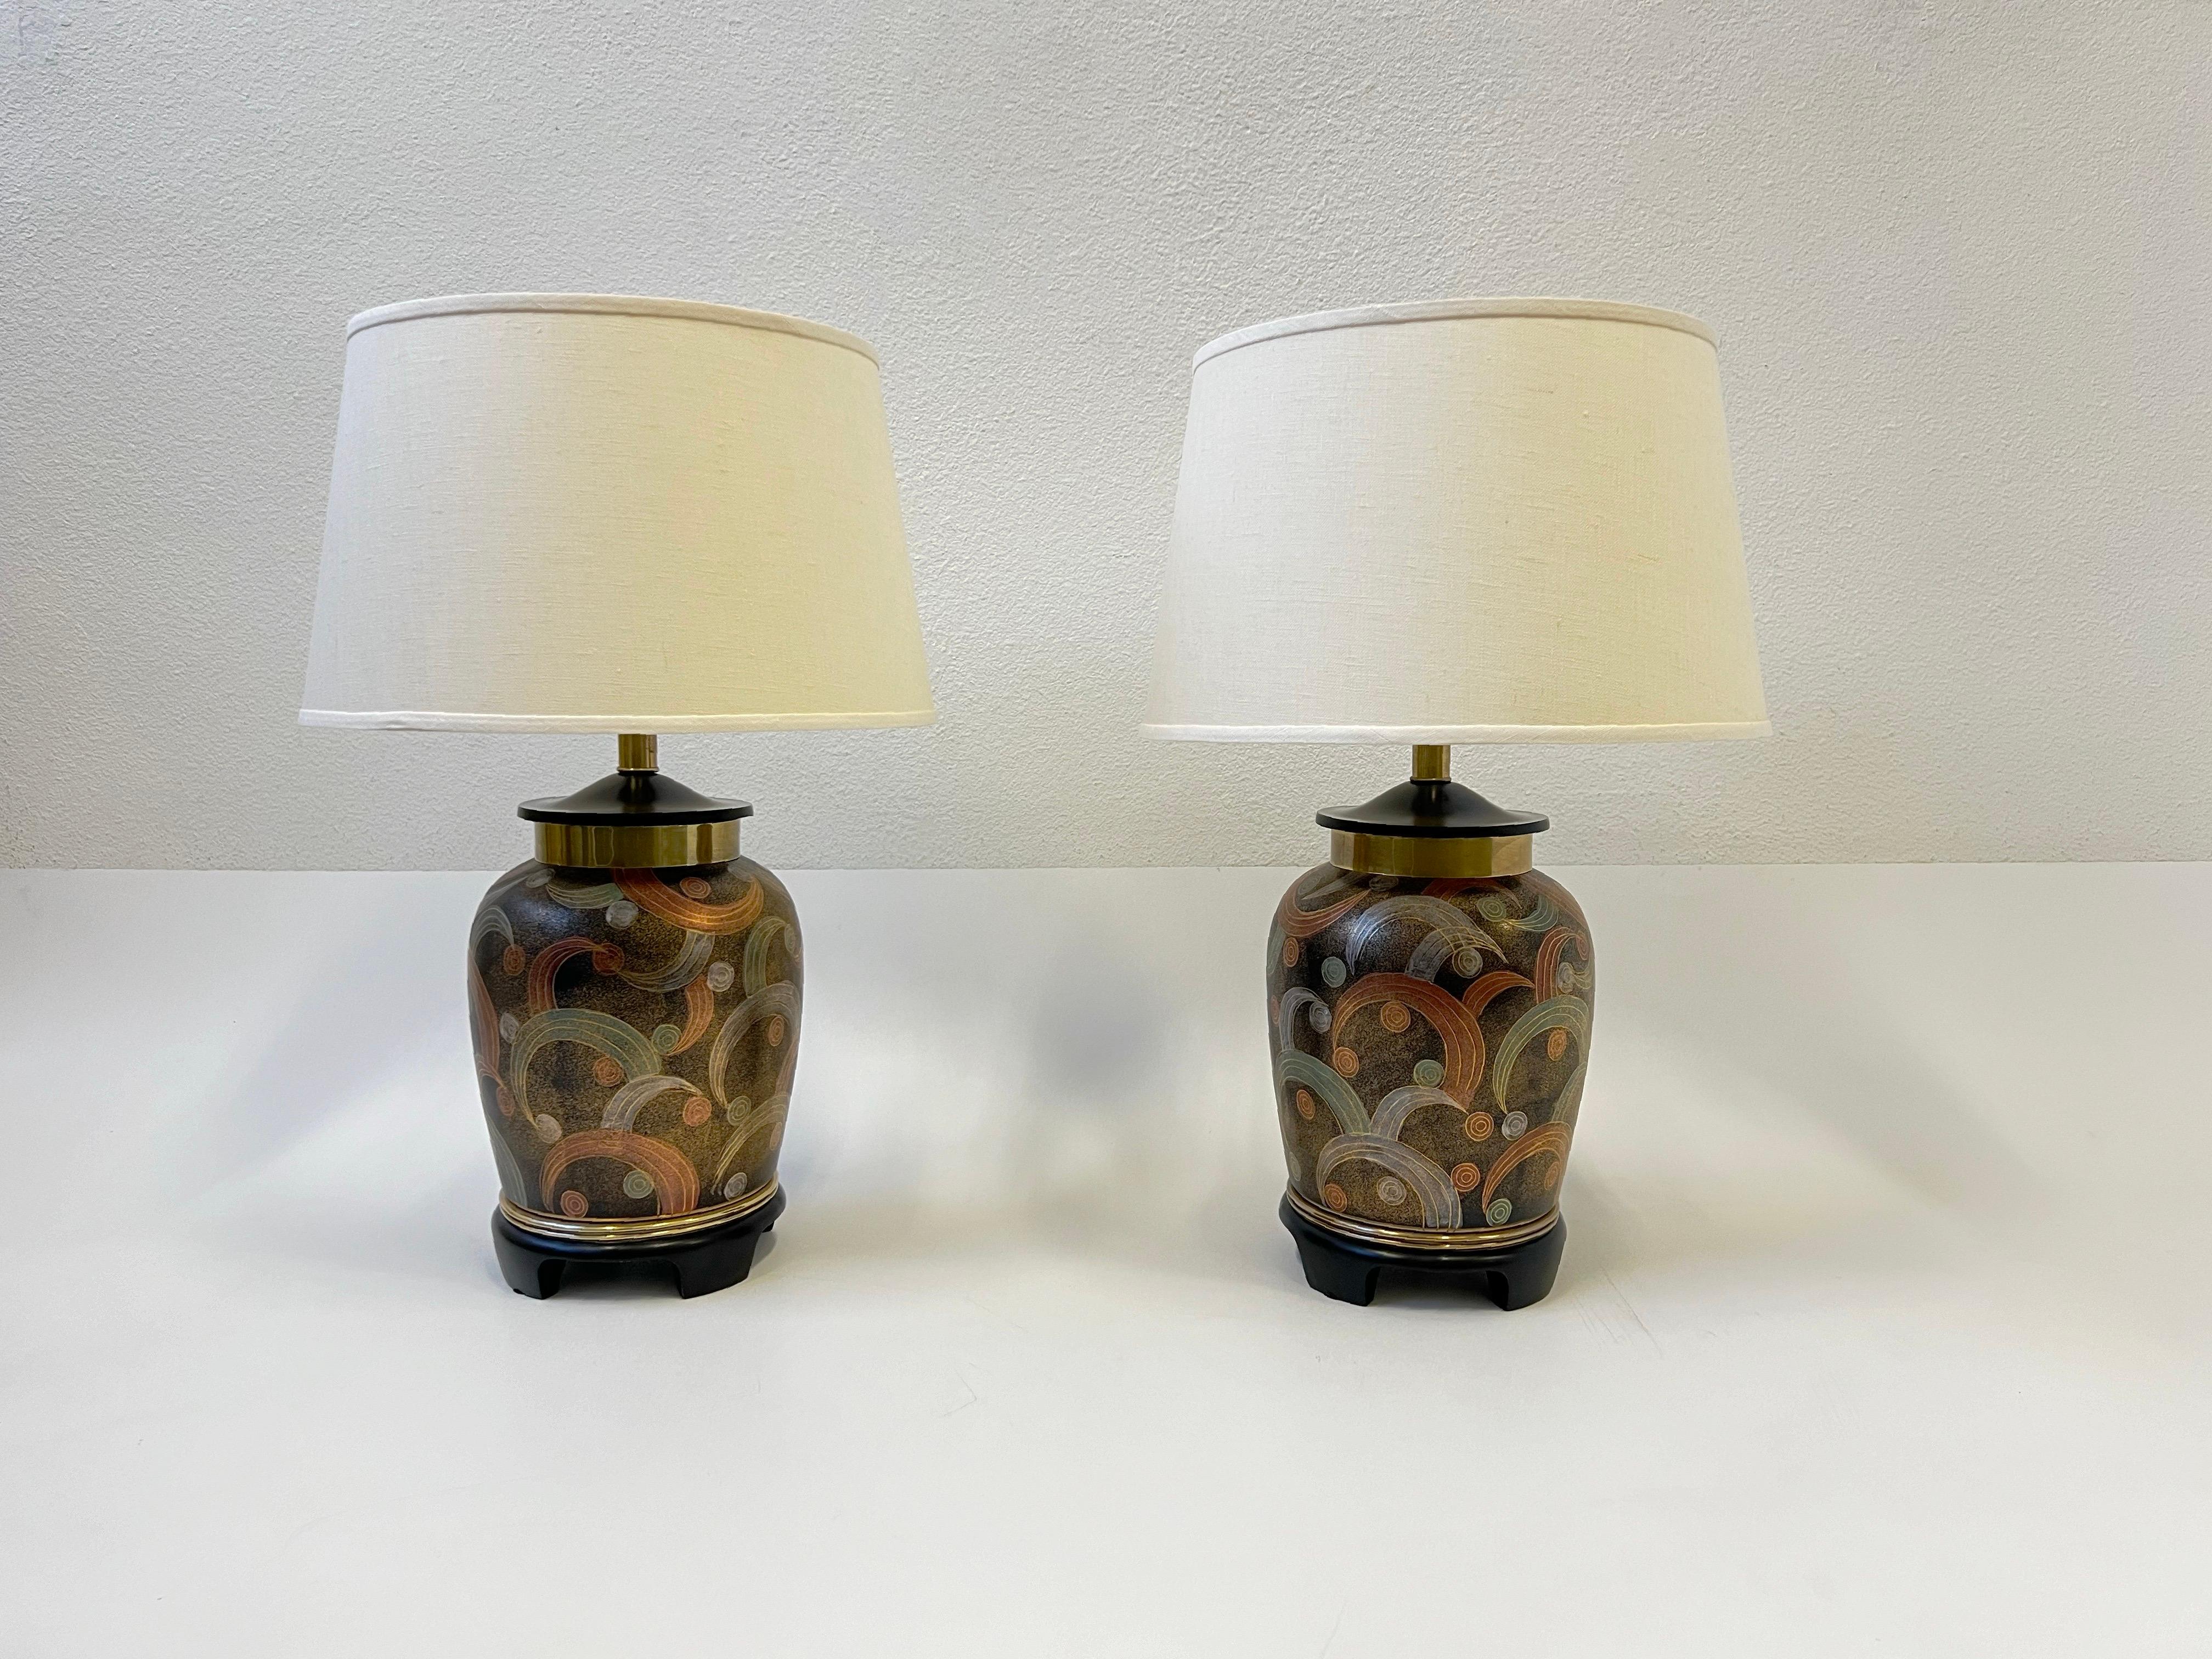 1980er Jahre handbemalte Porzellan-Urne Tischlampen von Frederick Cooper Chicago. 
Mit handbemalten Porzellanurnen, Messingbeschlägen, schwarzem Lacksockel und neuen Vanille-Leinenschirmen. 
Sie benötigen eine Edison-Glühbirne mit einer maximalen